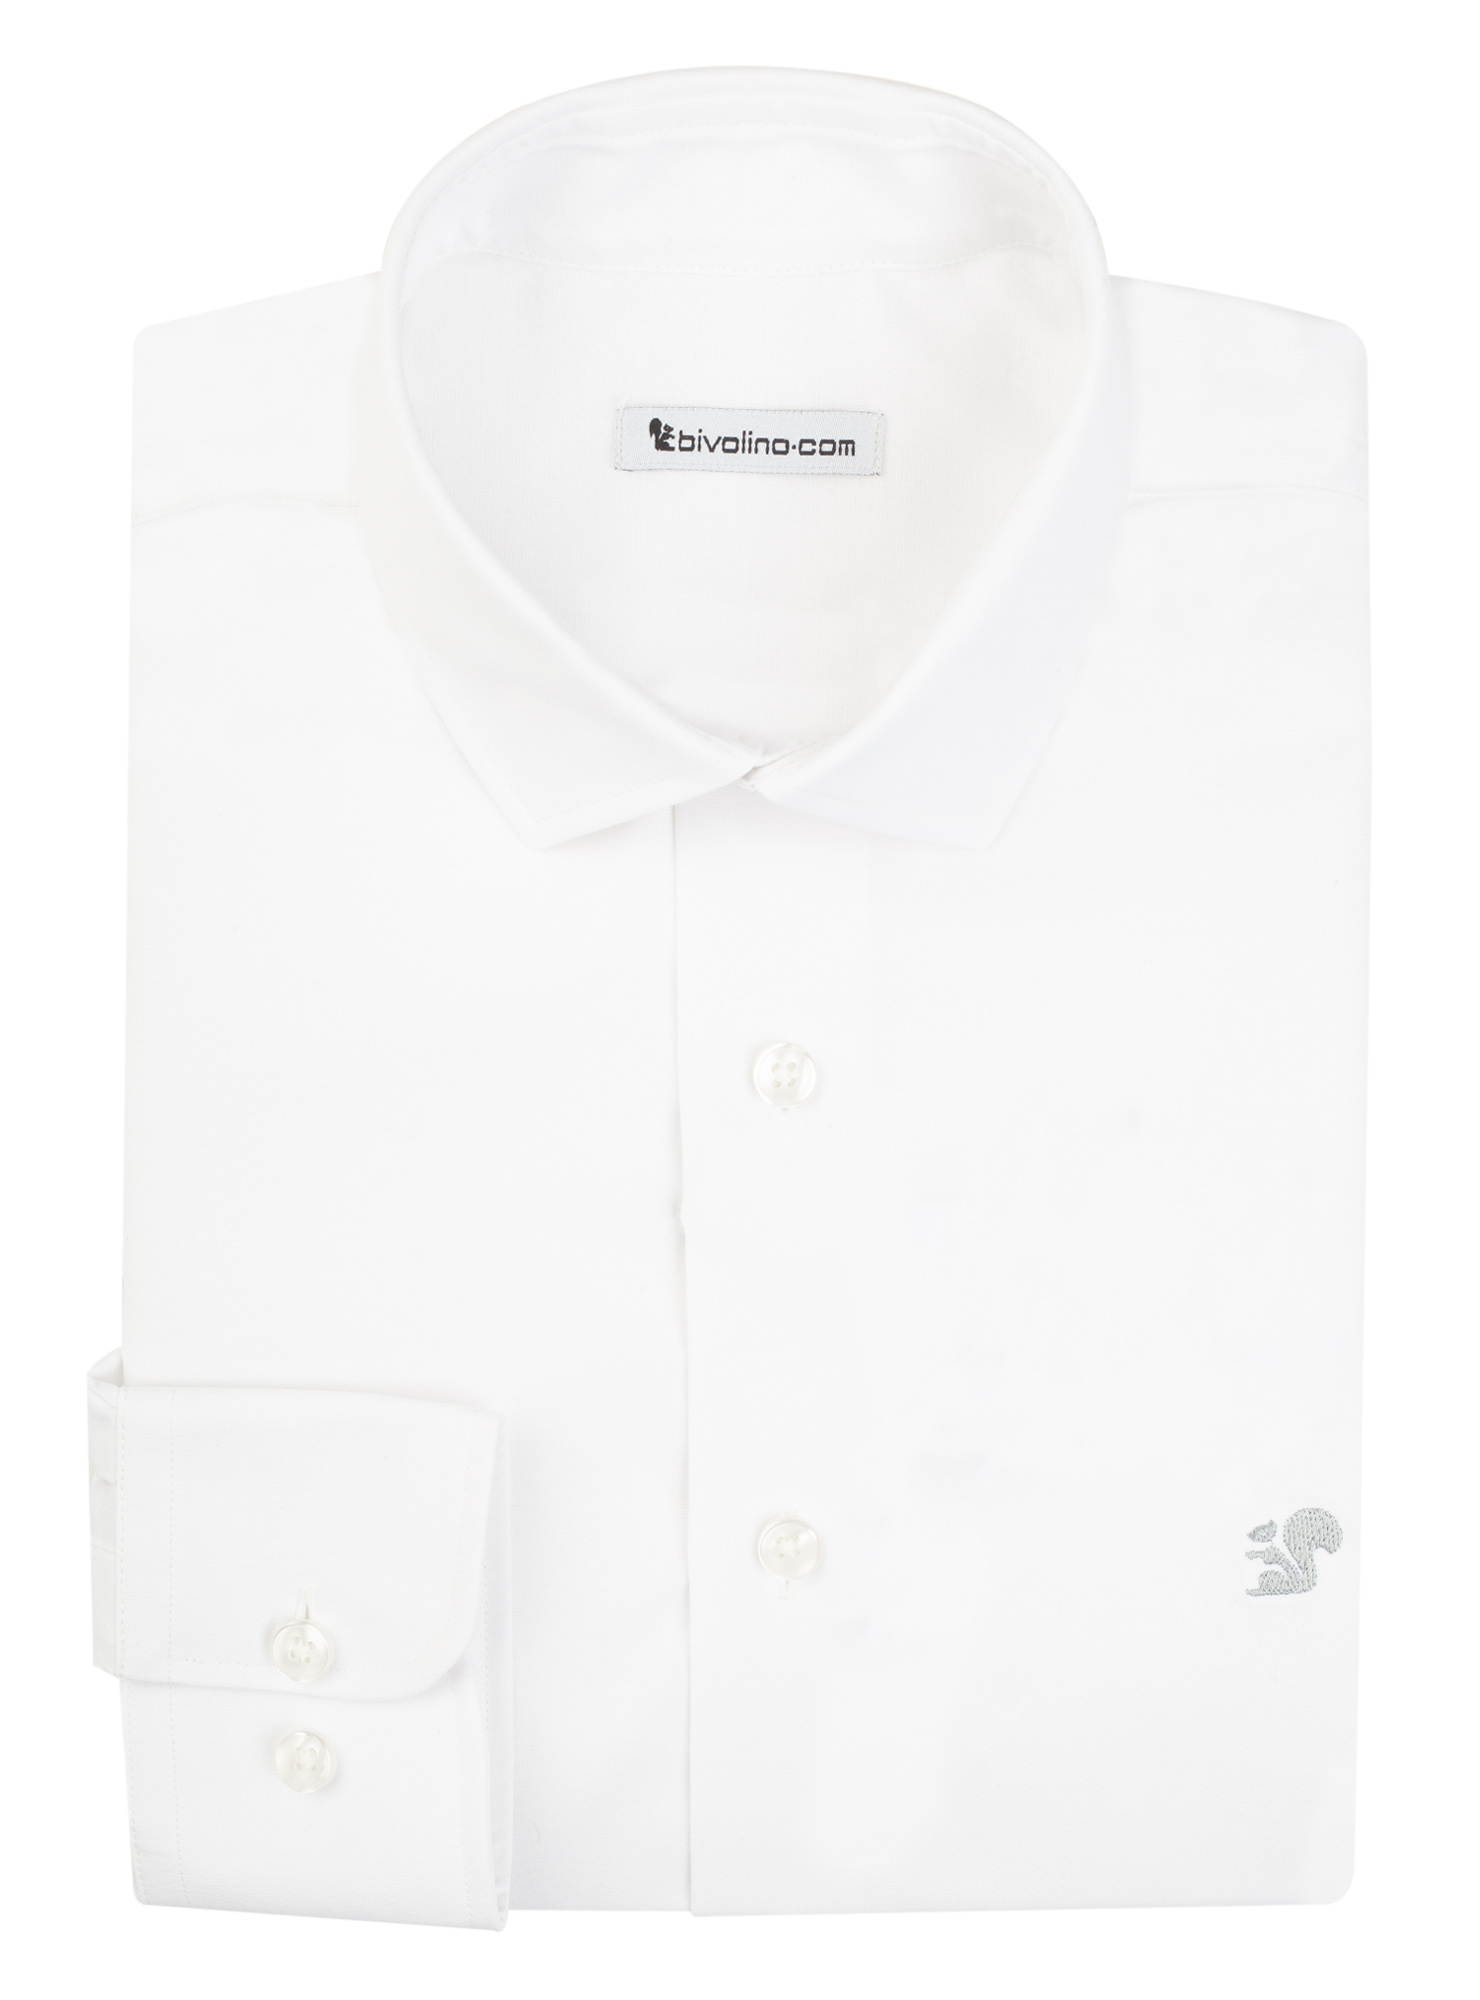 ORISTANO - chemise homme sur mesure cot-pes blanc uni popeline PET recyclé - COLT-PET-PLASTIC 1